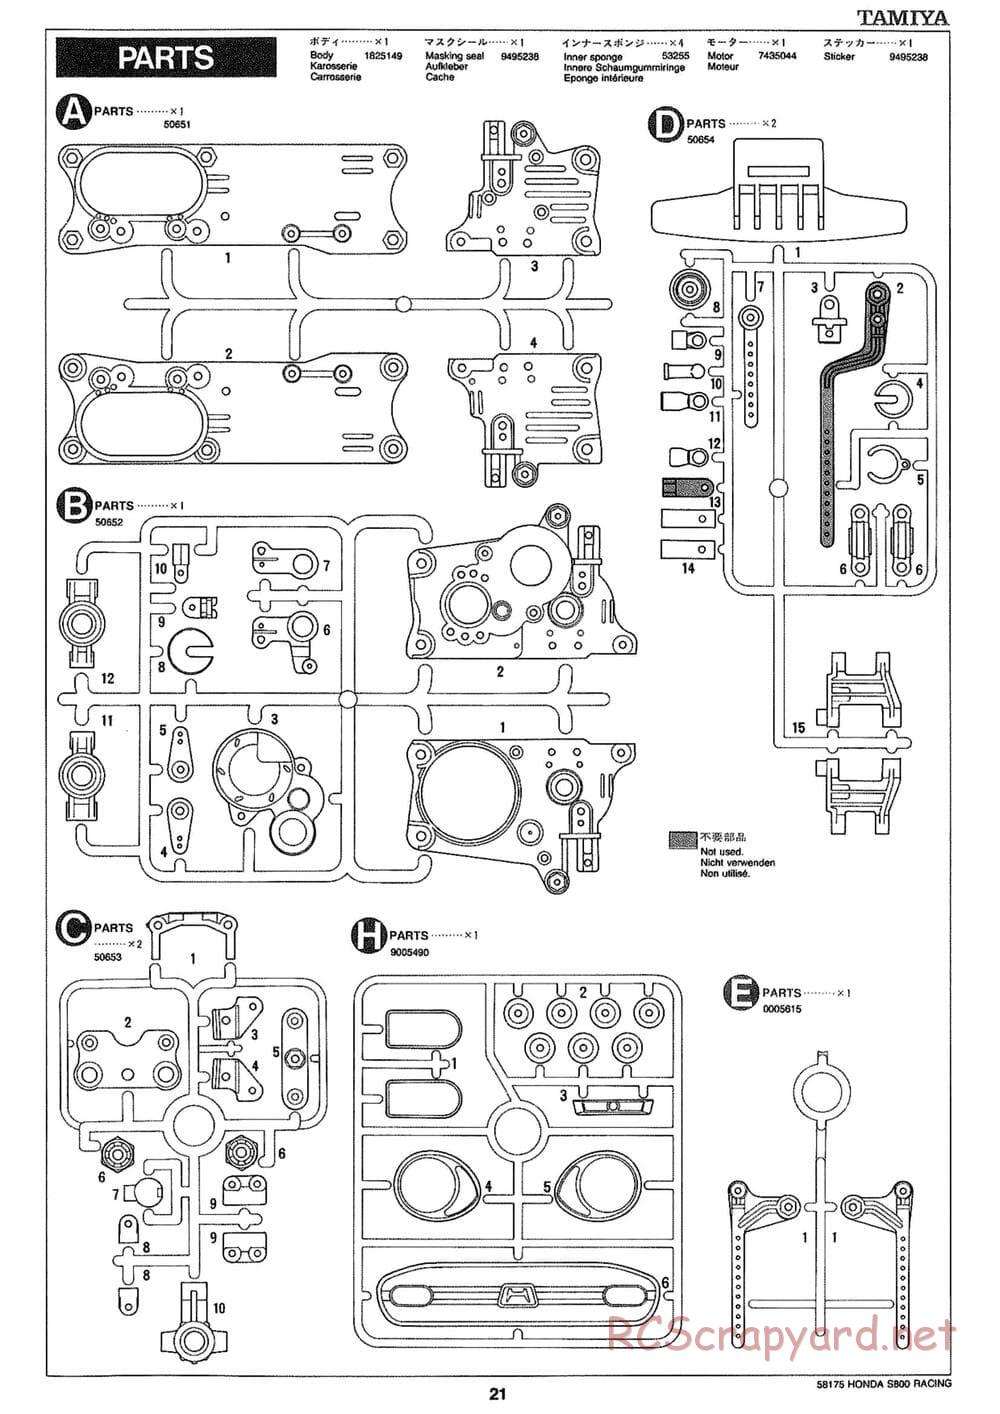 Tamiya - Honda S800 Racing - M02 Chassis - Manual - Page 21